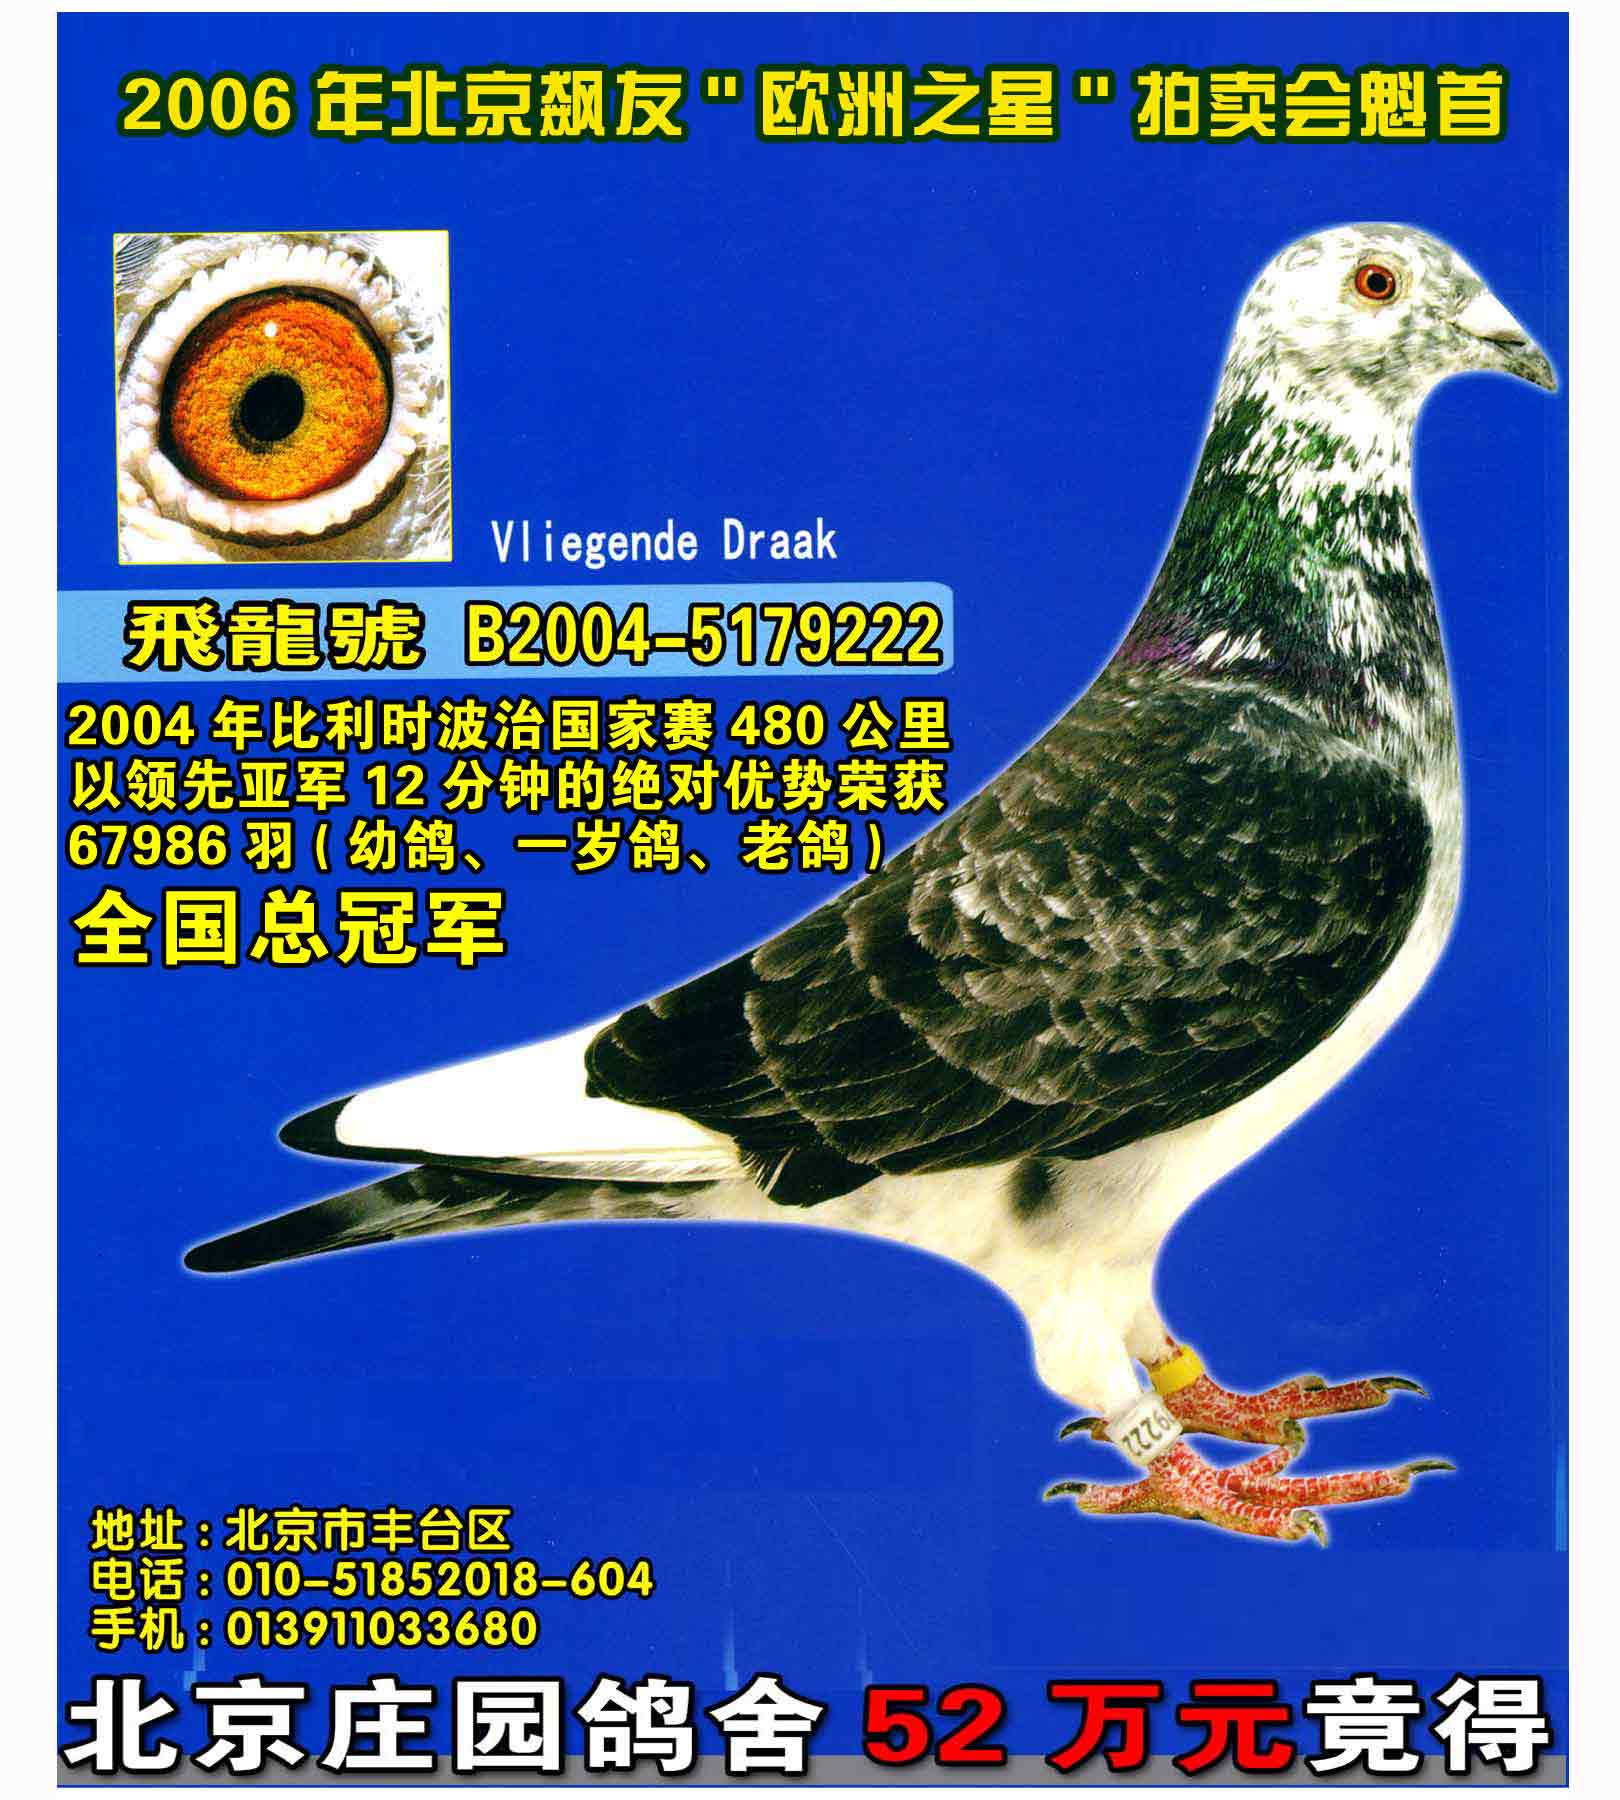 大名鸽 飞龙号 --中国信鸽信息网相册